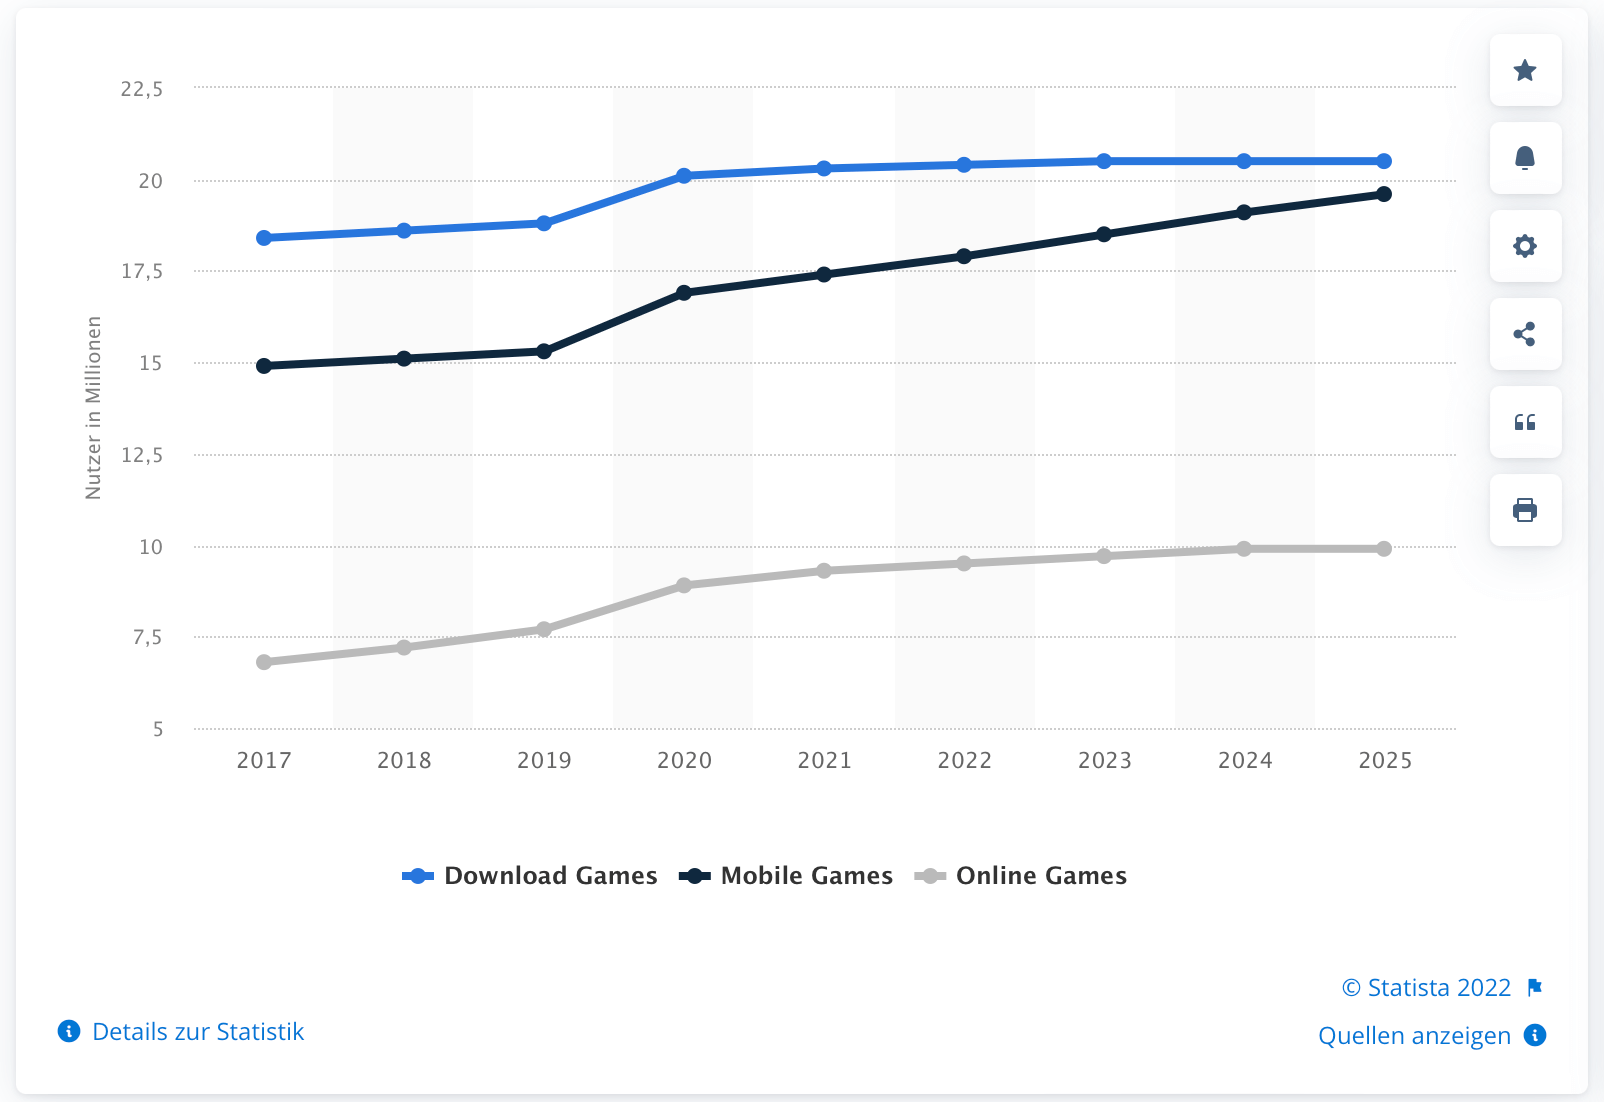 Prognose zu Nutzerzahlen von Videospielen nach Segmenten in Deutschland für die Jahre 2017 bis 2025